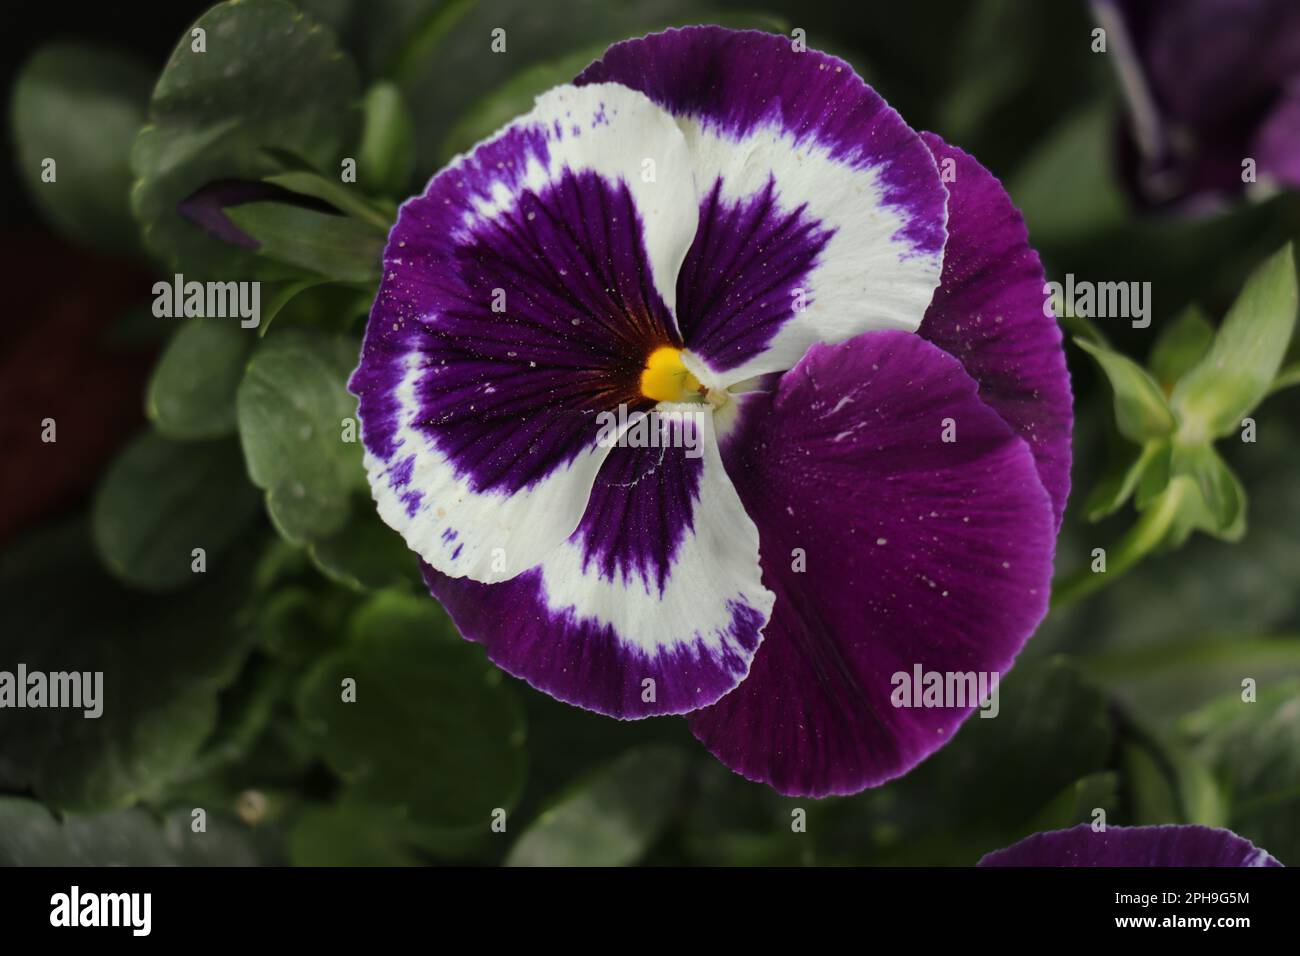 Pansy fiore. I fiori viola hanno marcature bianche e gialle e fiori centrali scuri. Foto Stock